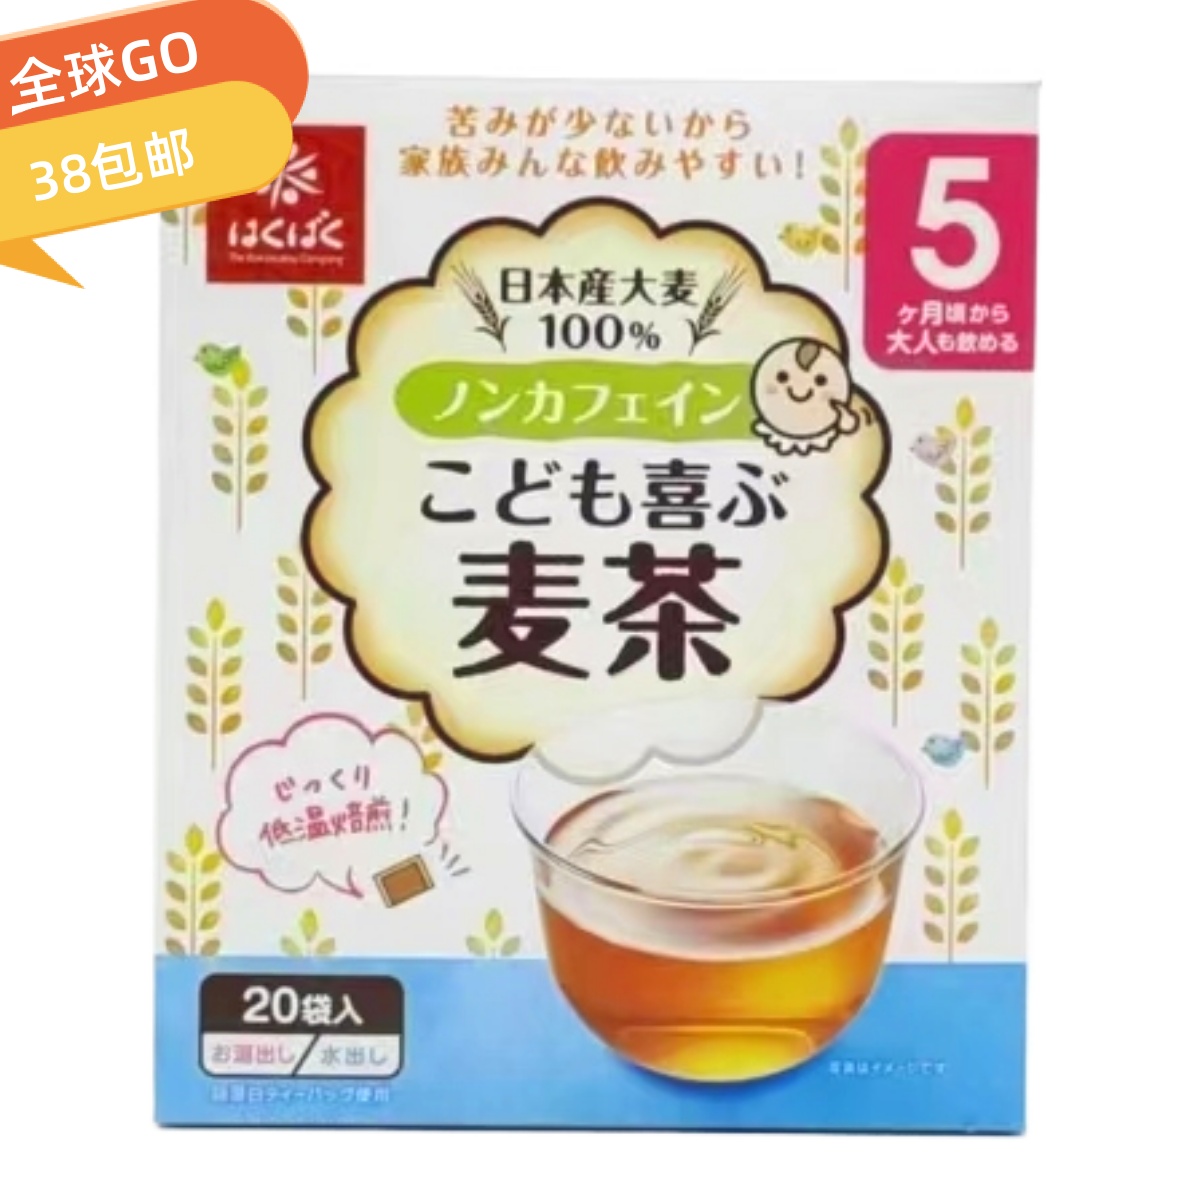 日本进口hakubaku合康贝谷大麦茶160g独立包装方便冲泡